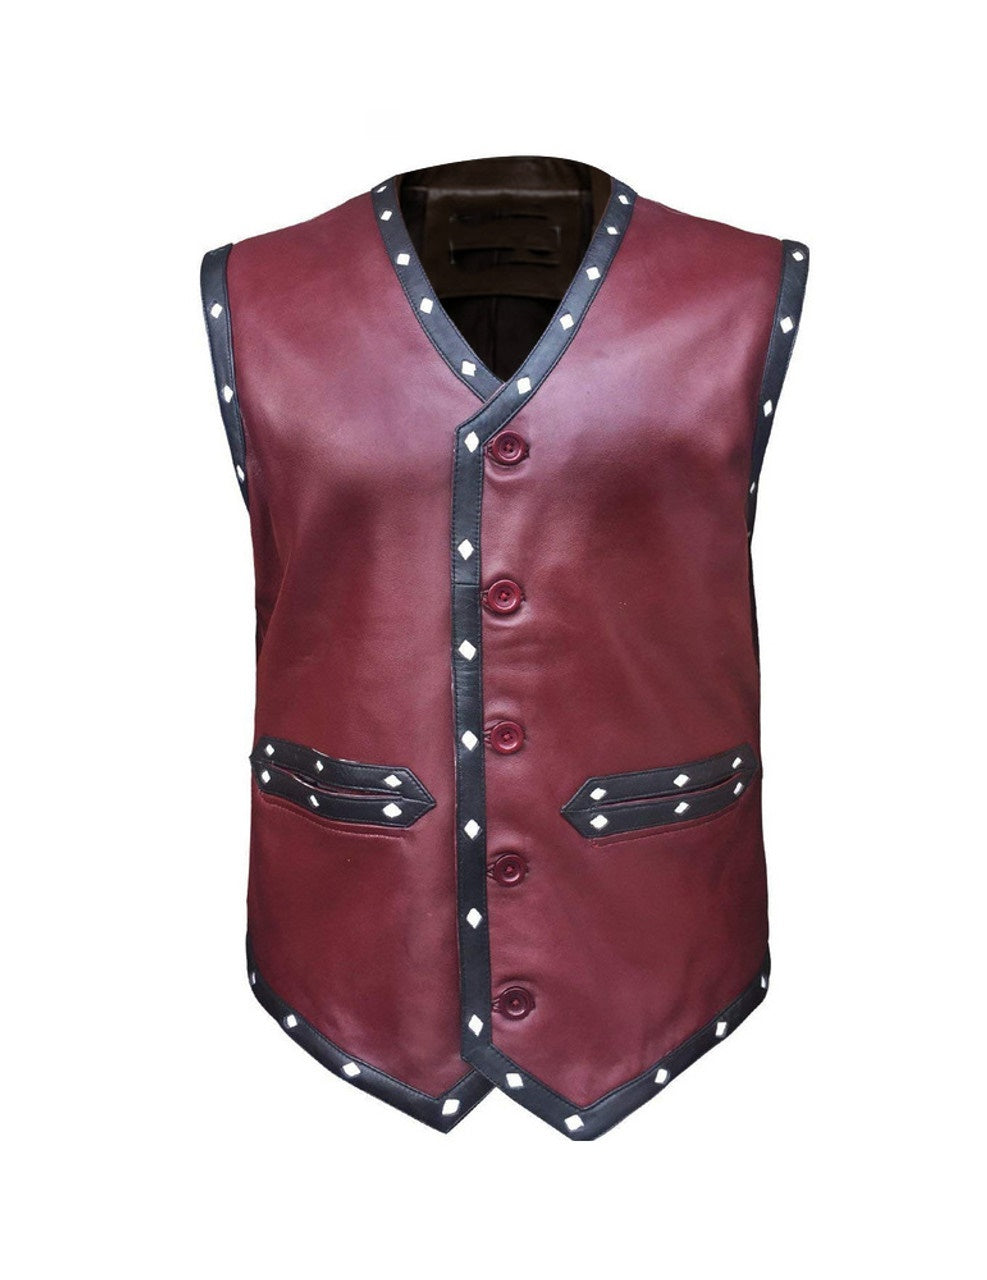 warrior vest for men leather jacket for men maroon vest men warrior vest men genuine leather vest men biker vest for men gift fo him